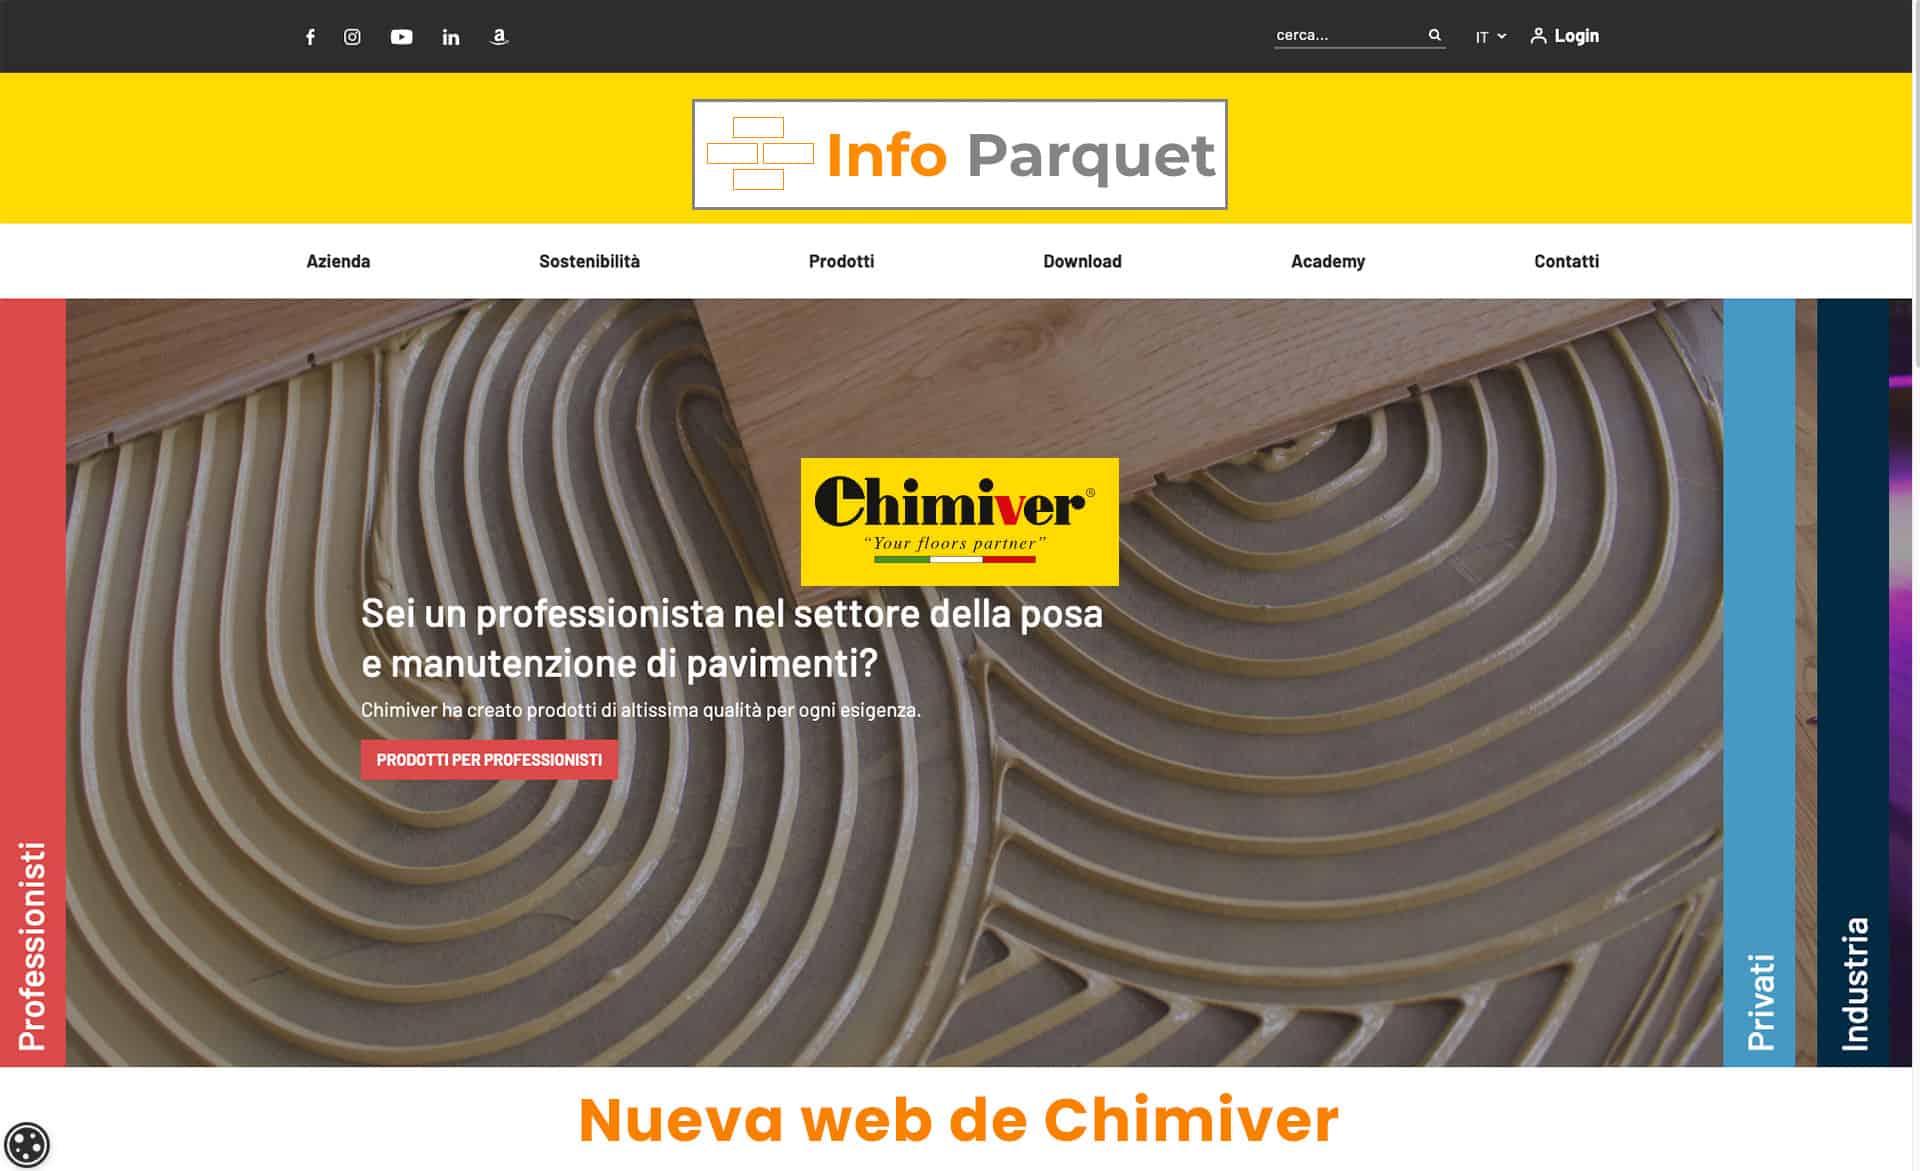 Nueva web de Chimiver